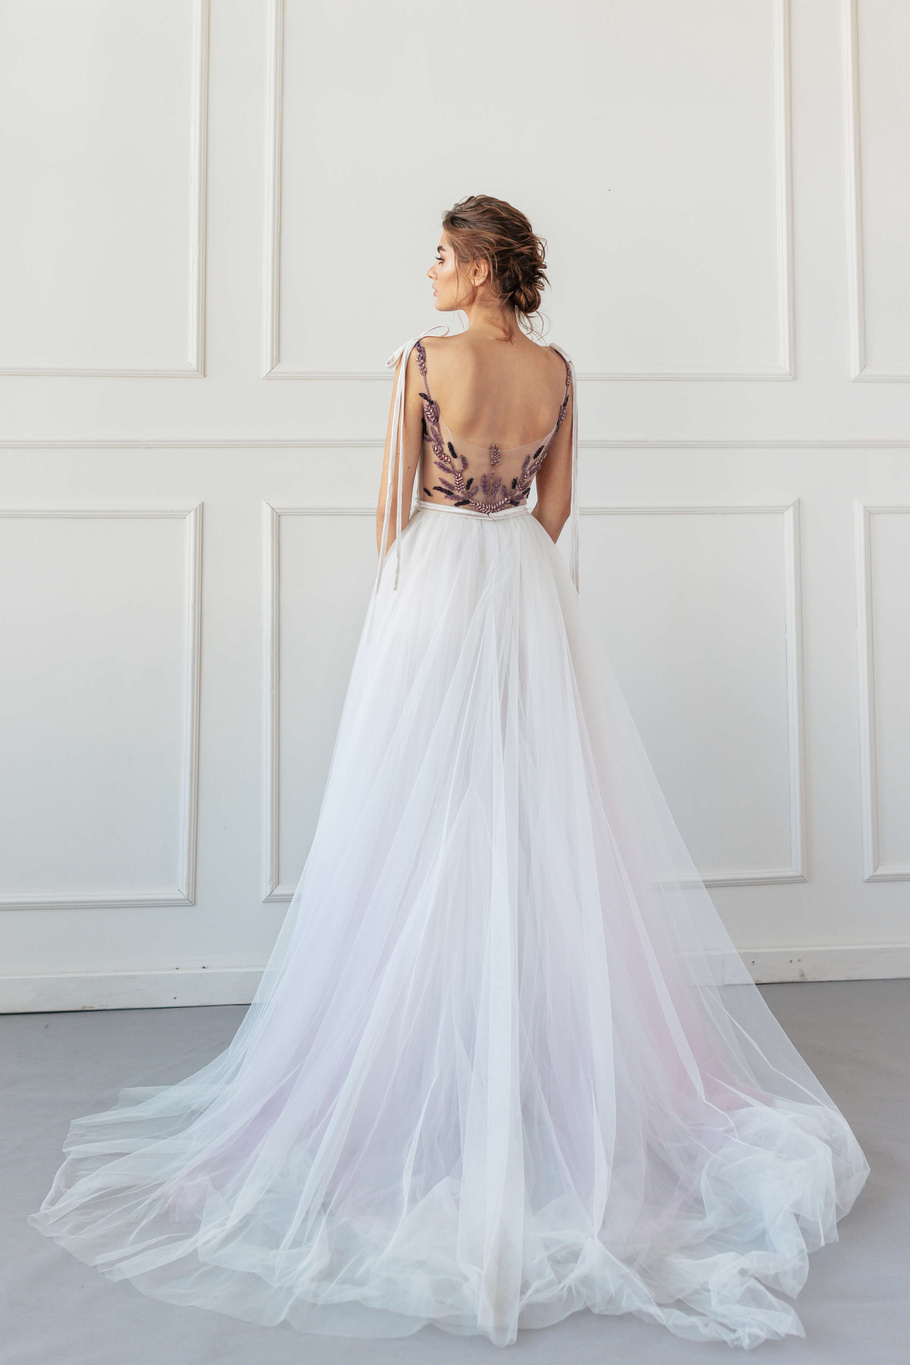 Купить свадебное платье «Нина» Анже Этуаль из коллекции 2020 года в салоне «Мэри Трюфель»